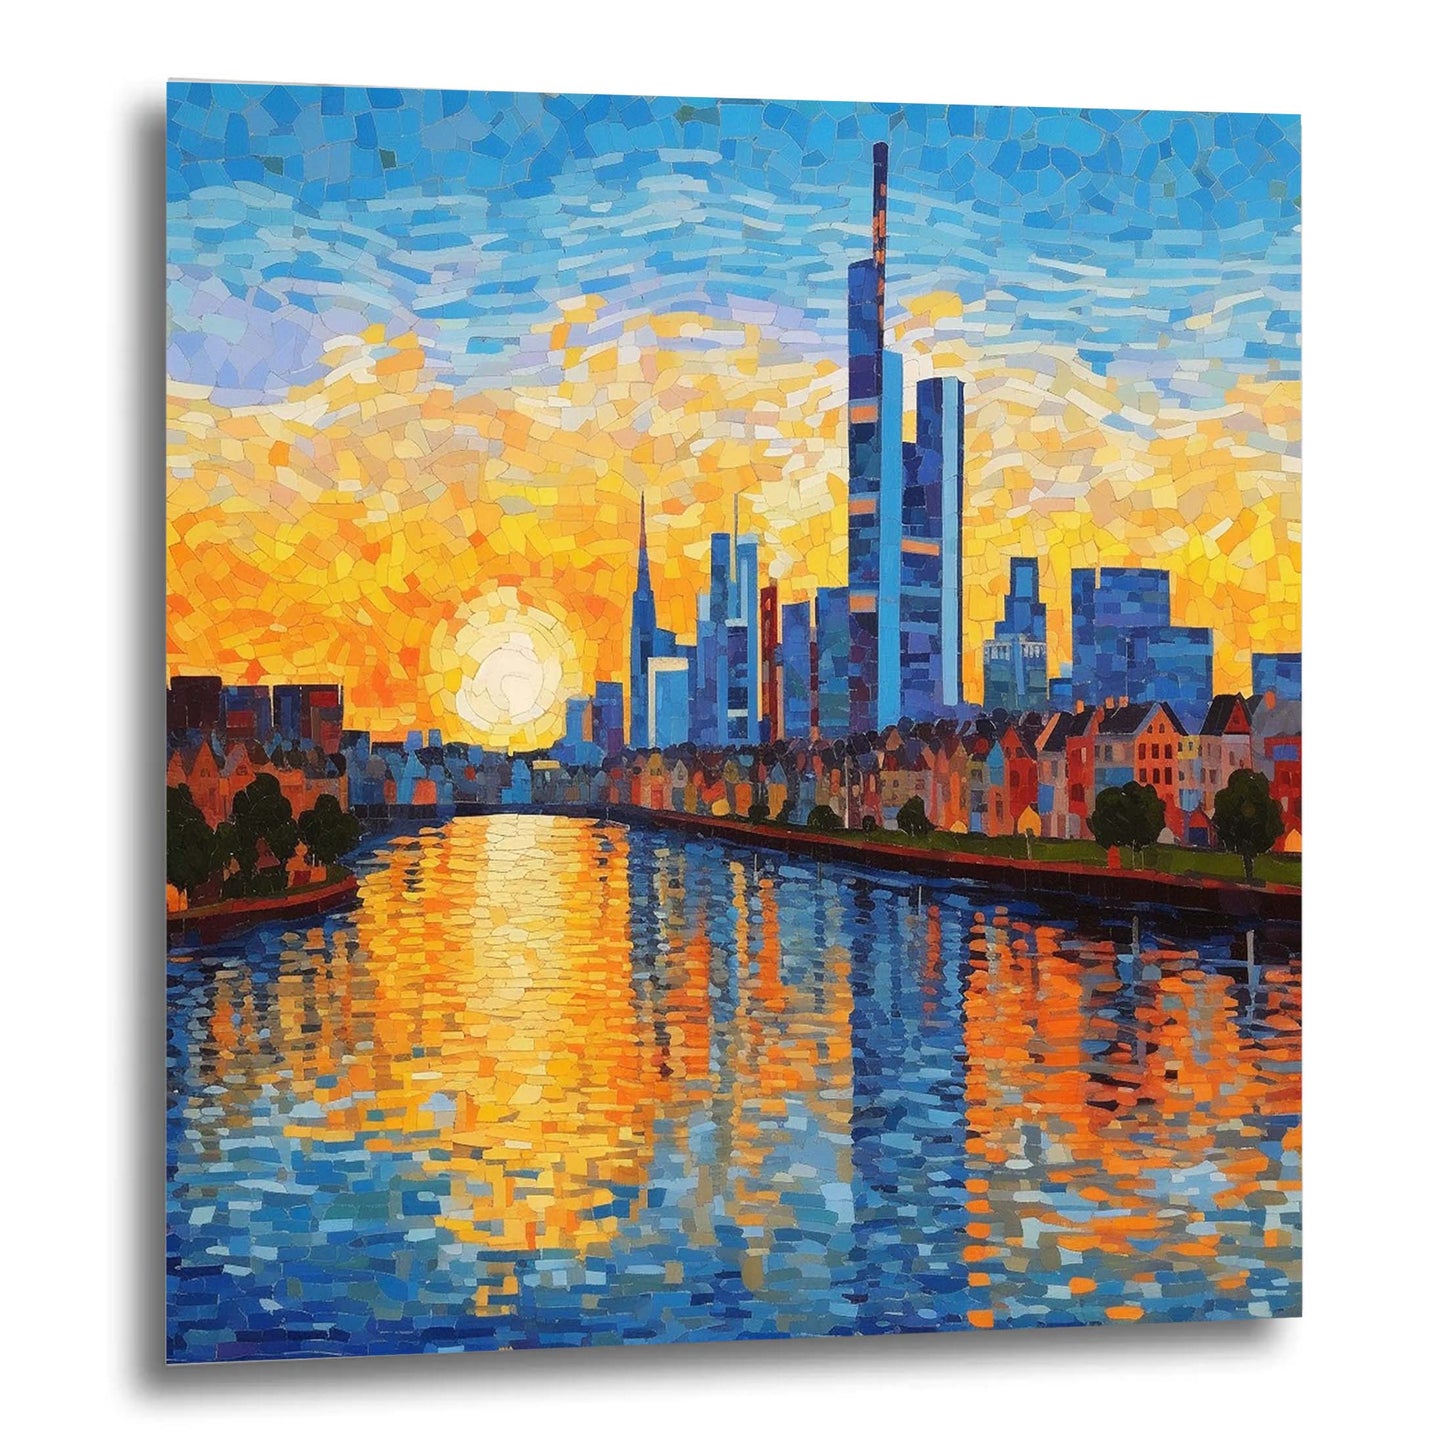 Frankfurt Skyline - Wandbild in der Stilrichtung des Impressionismus